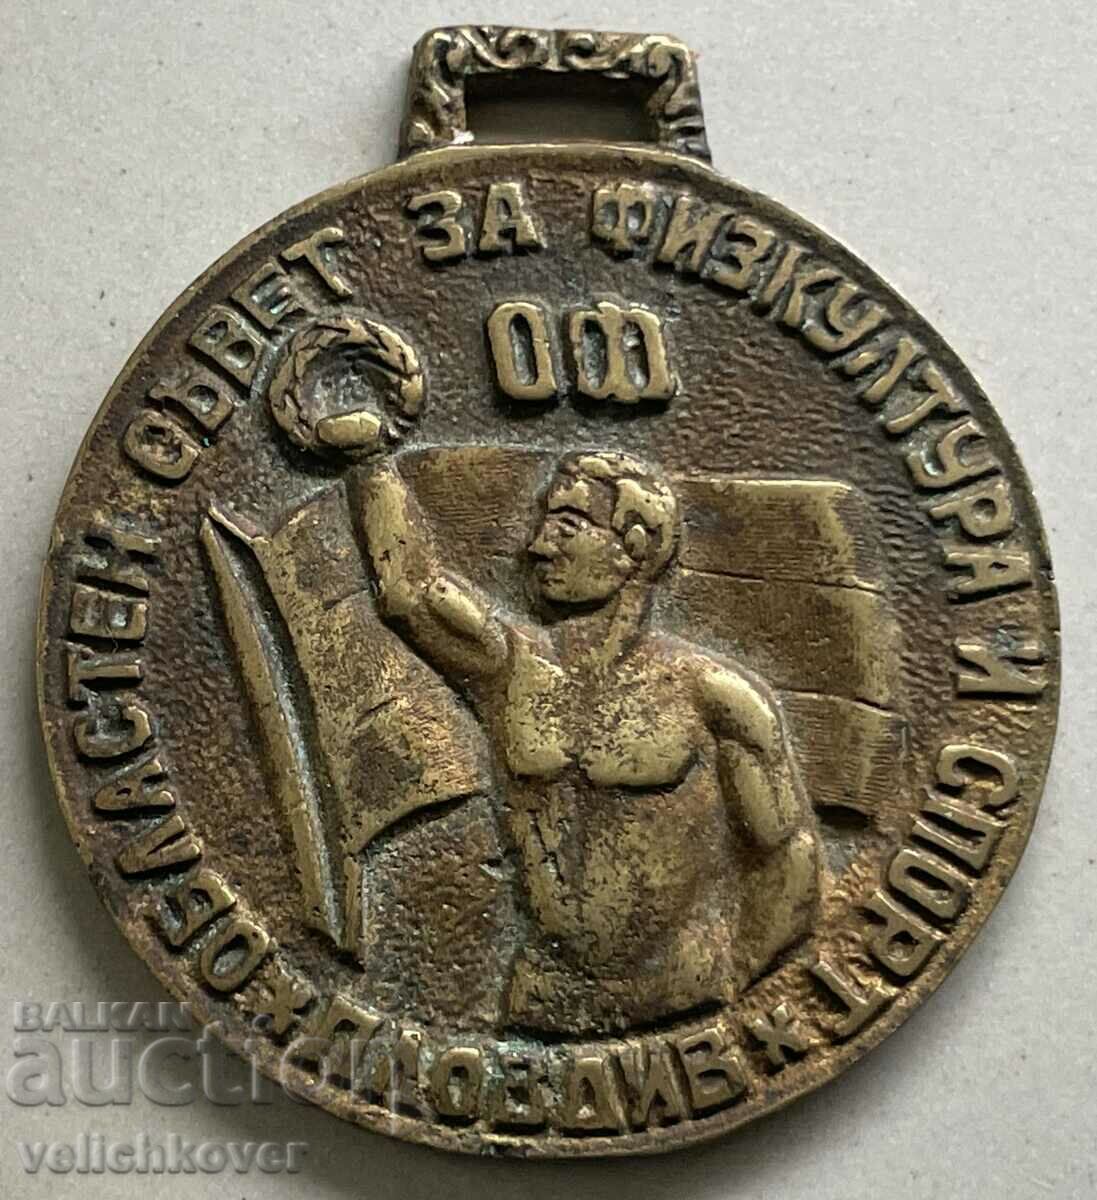 34215 Μετάλλιο Ημέρας Φυσικής Αγωγής Βουλγαρίας 1945 ΤΗΣ Πατρίδος